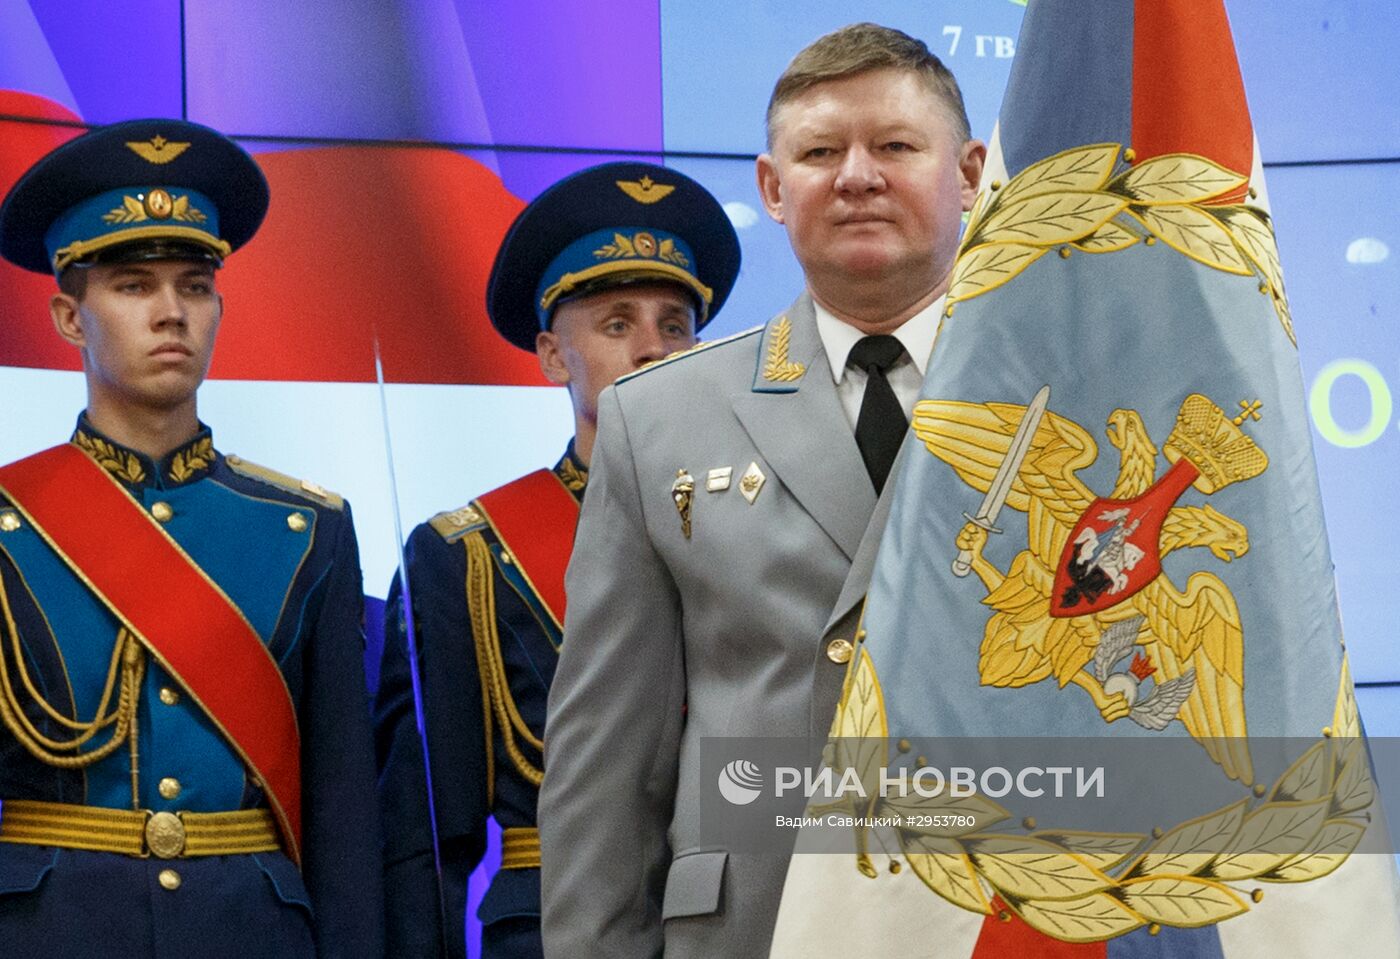 Министр обороны РФ С. Шойгу вручил штандарт новому командующему ВДВ